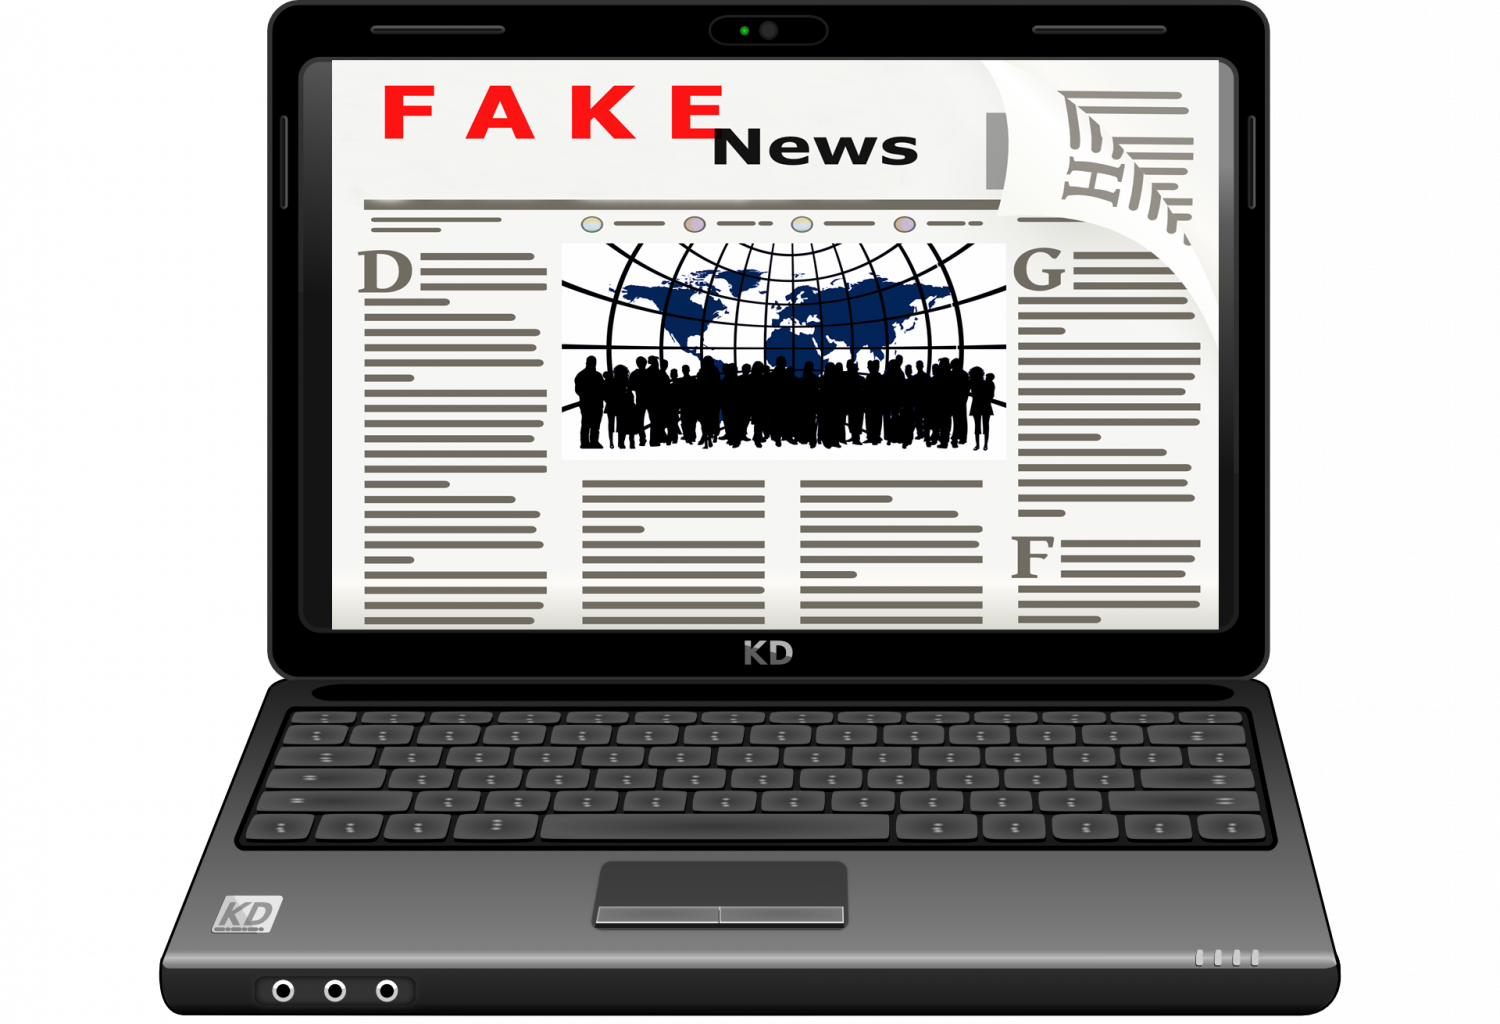  Știm să facem diferenţa între real şi fake news?